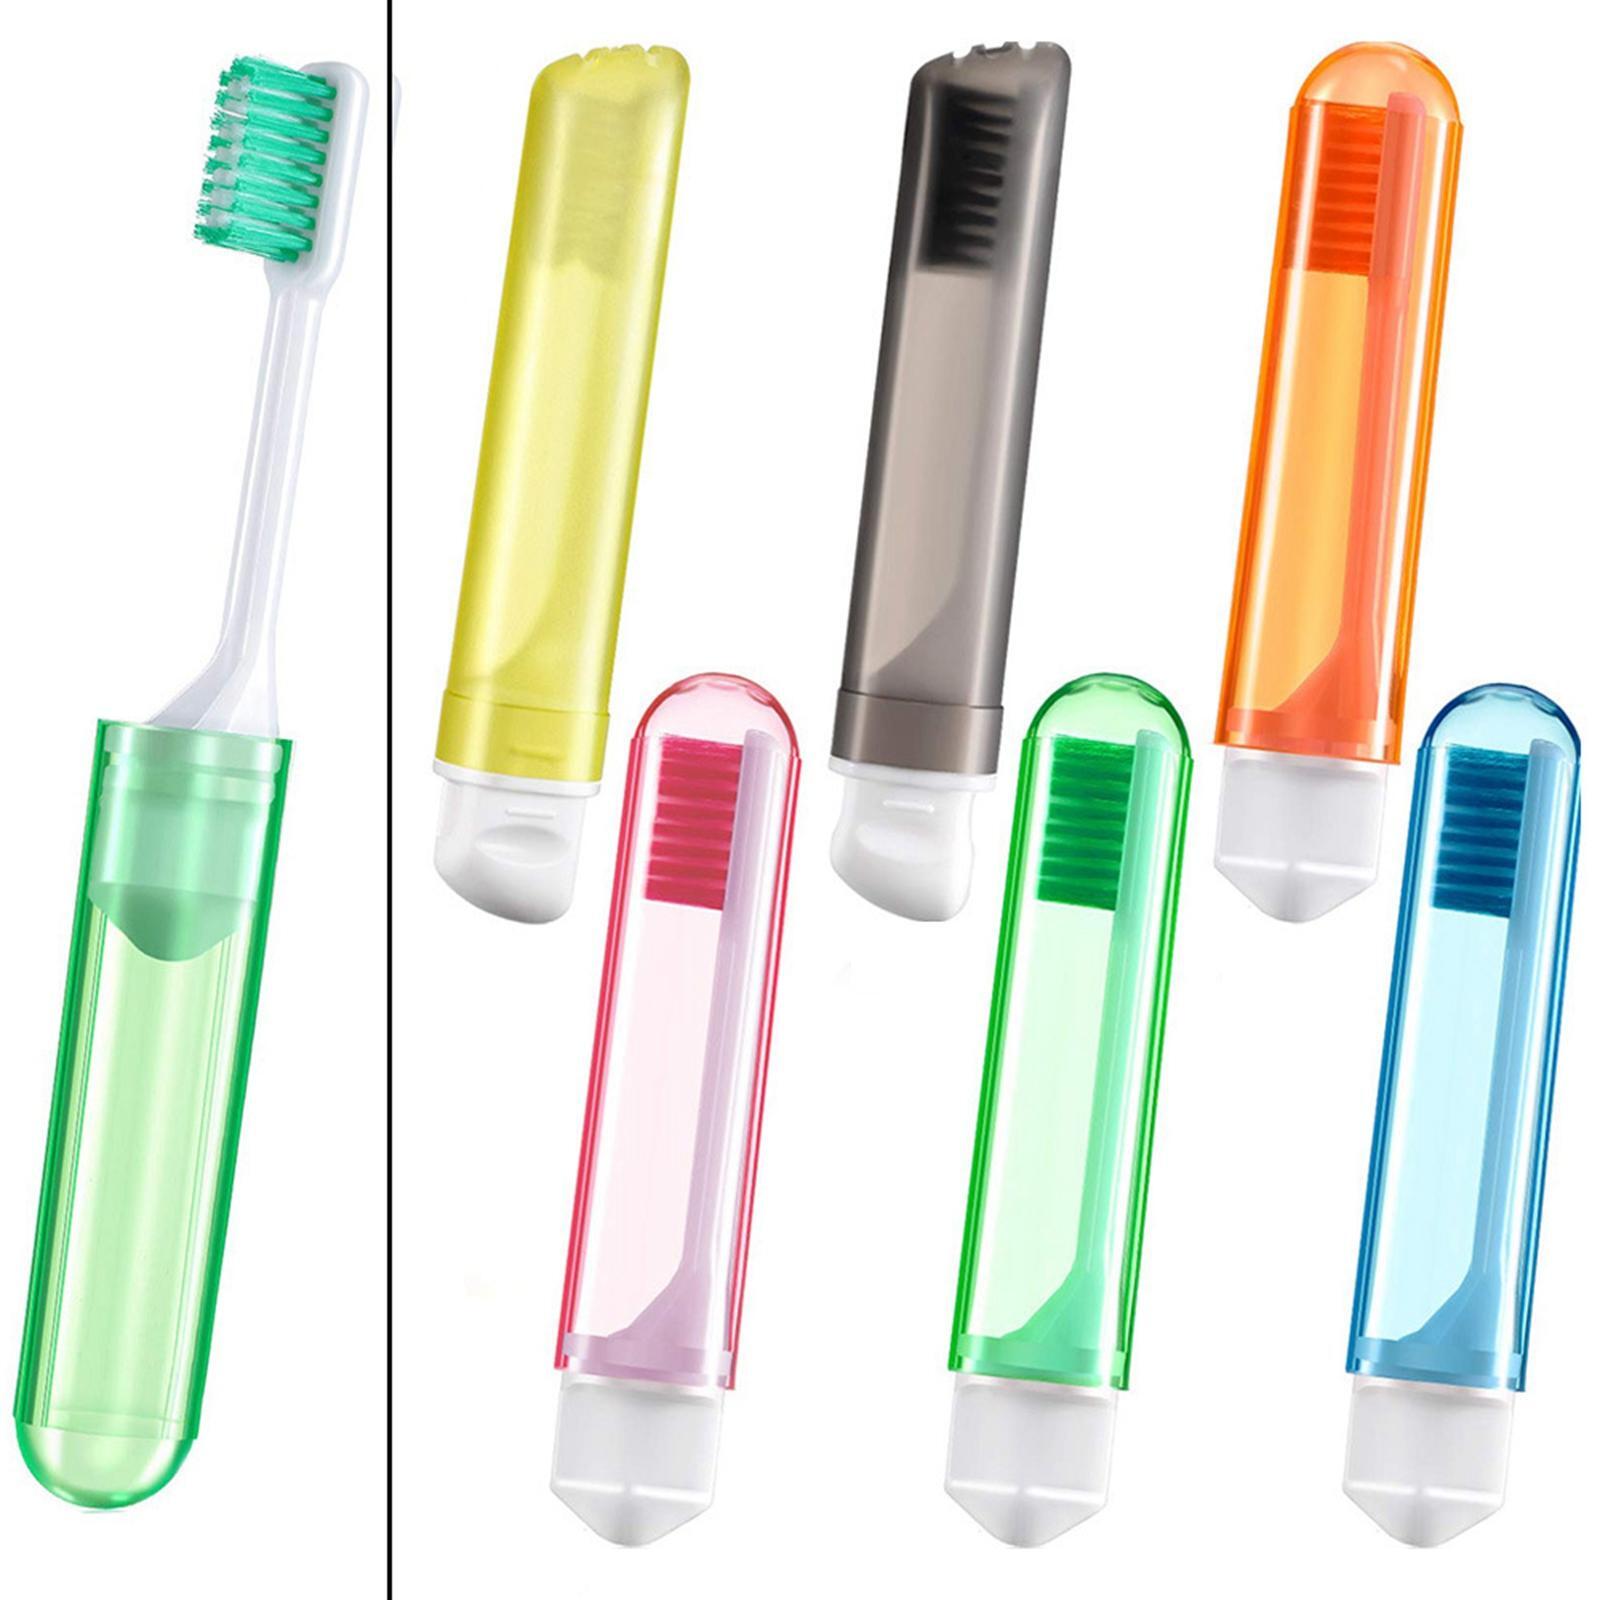 's draagbare vouwt tandenborstel zakformaat voor reizen wandelen kinderen volwassenen